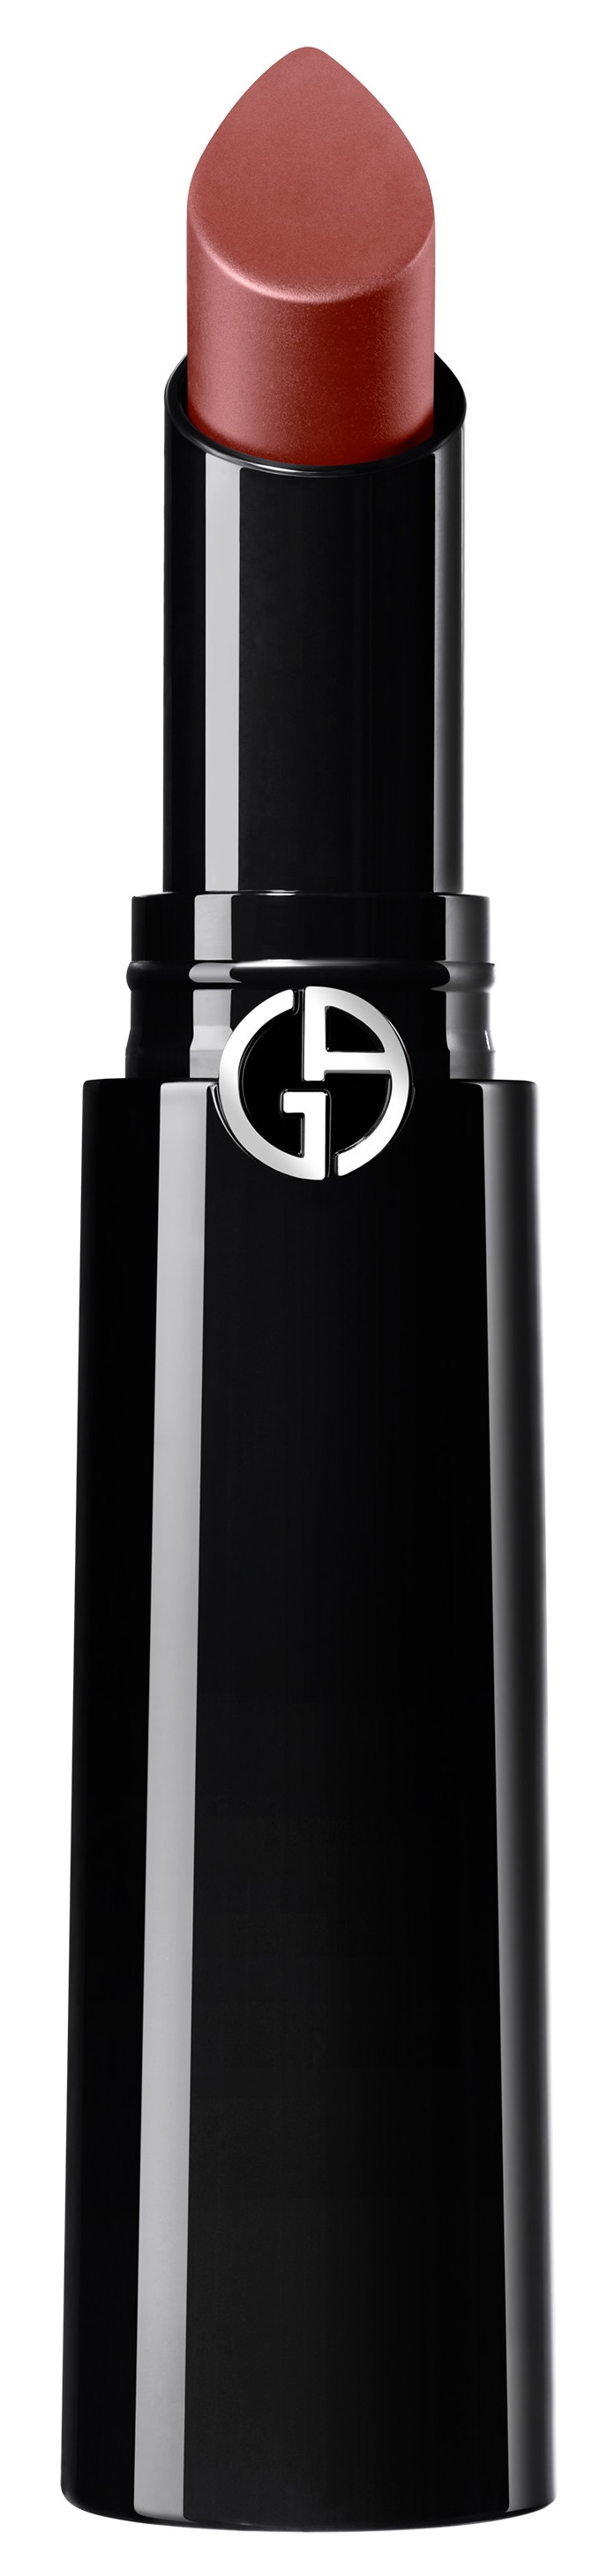 Giorgio Armani Lip Power Vivid Color Long Wear Lipstick 200 